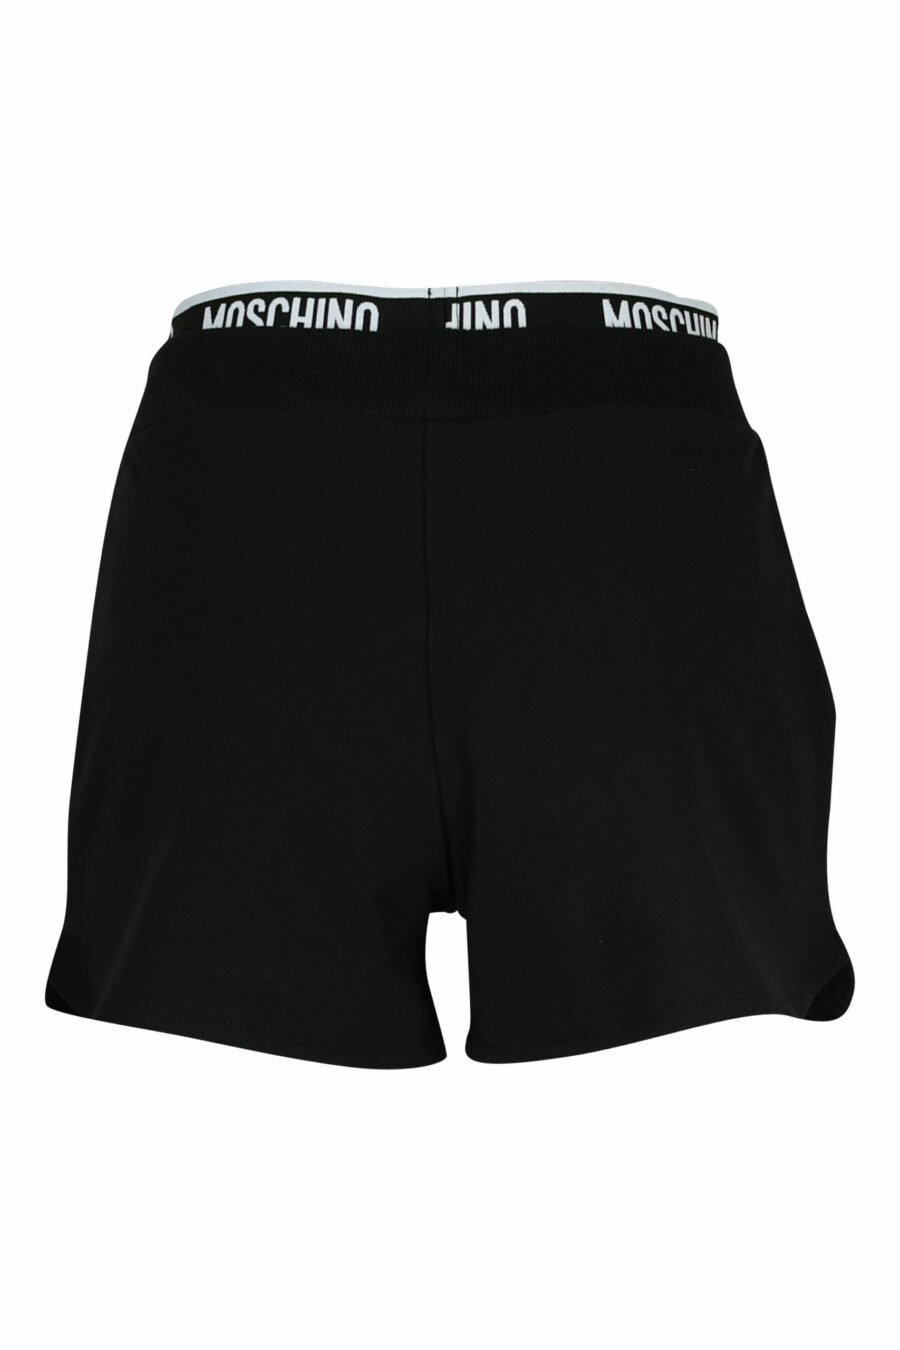 Shorts negros con logo en cinta en cintura blanco - 667113714882 1 scaled